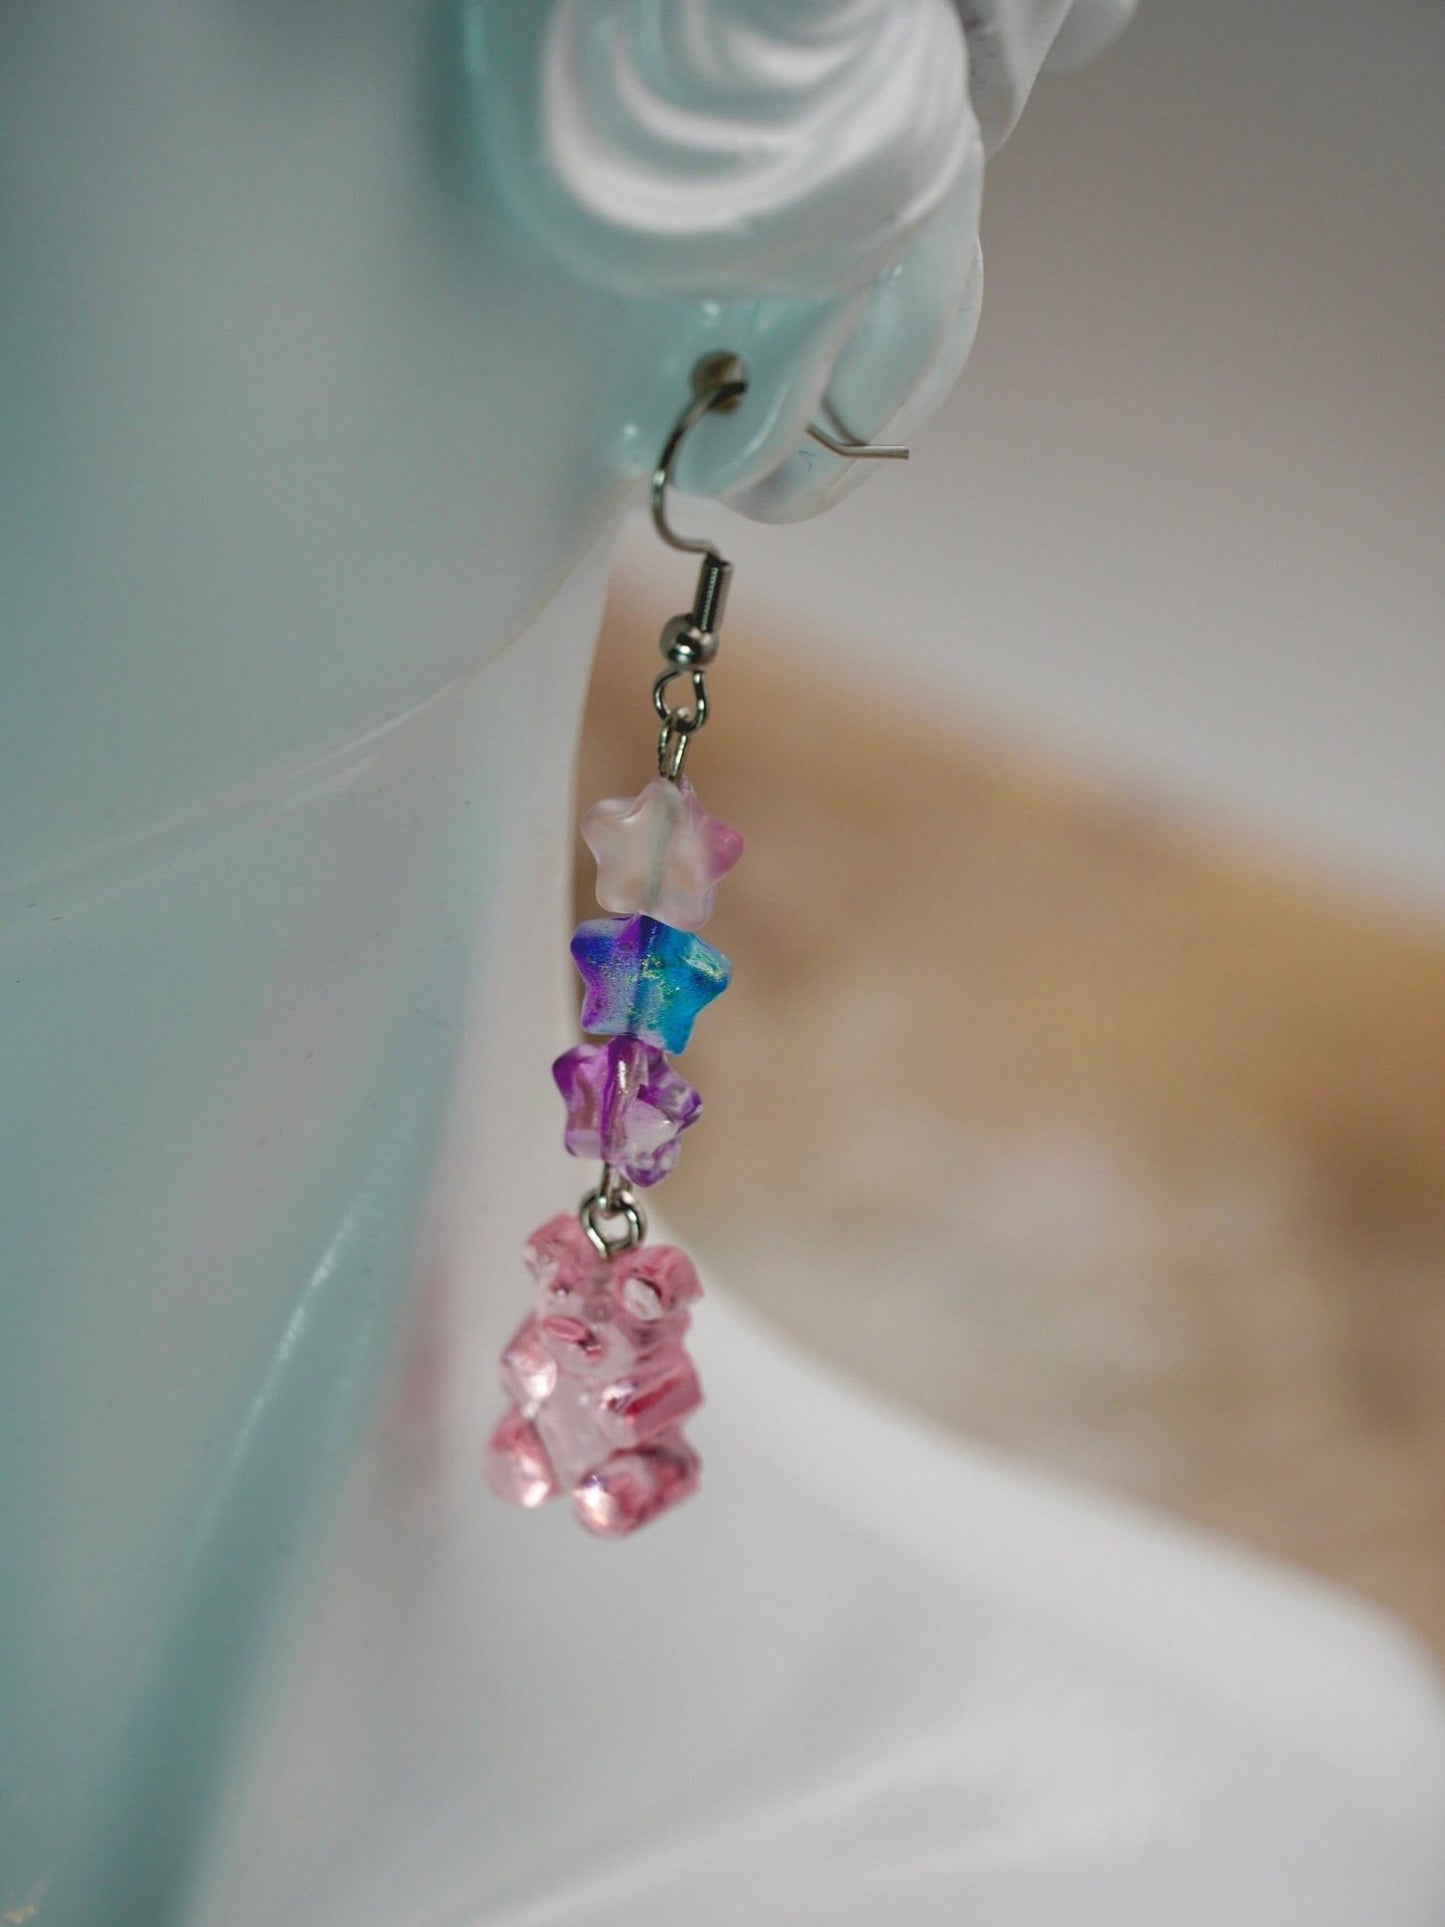 Pink Gummy Bear Earrings with Czech Glass Beads, Elegant Spring Fashion Earrings - Dekowaii Jewelry Company